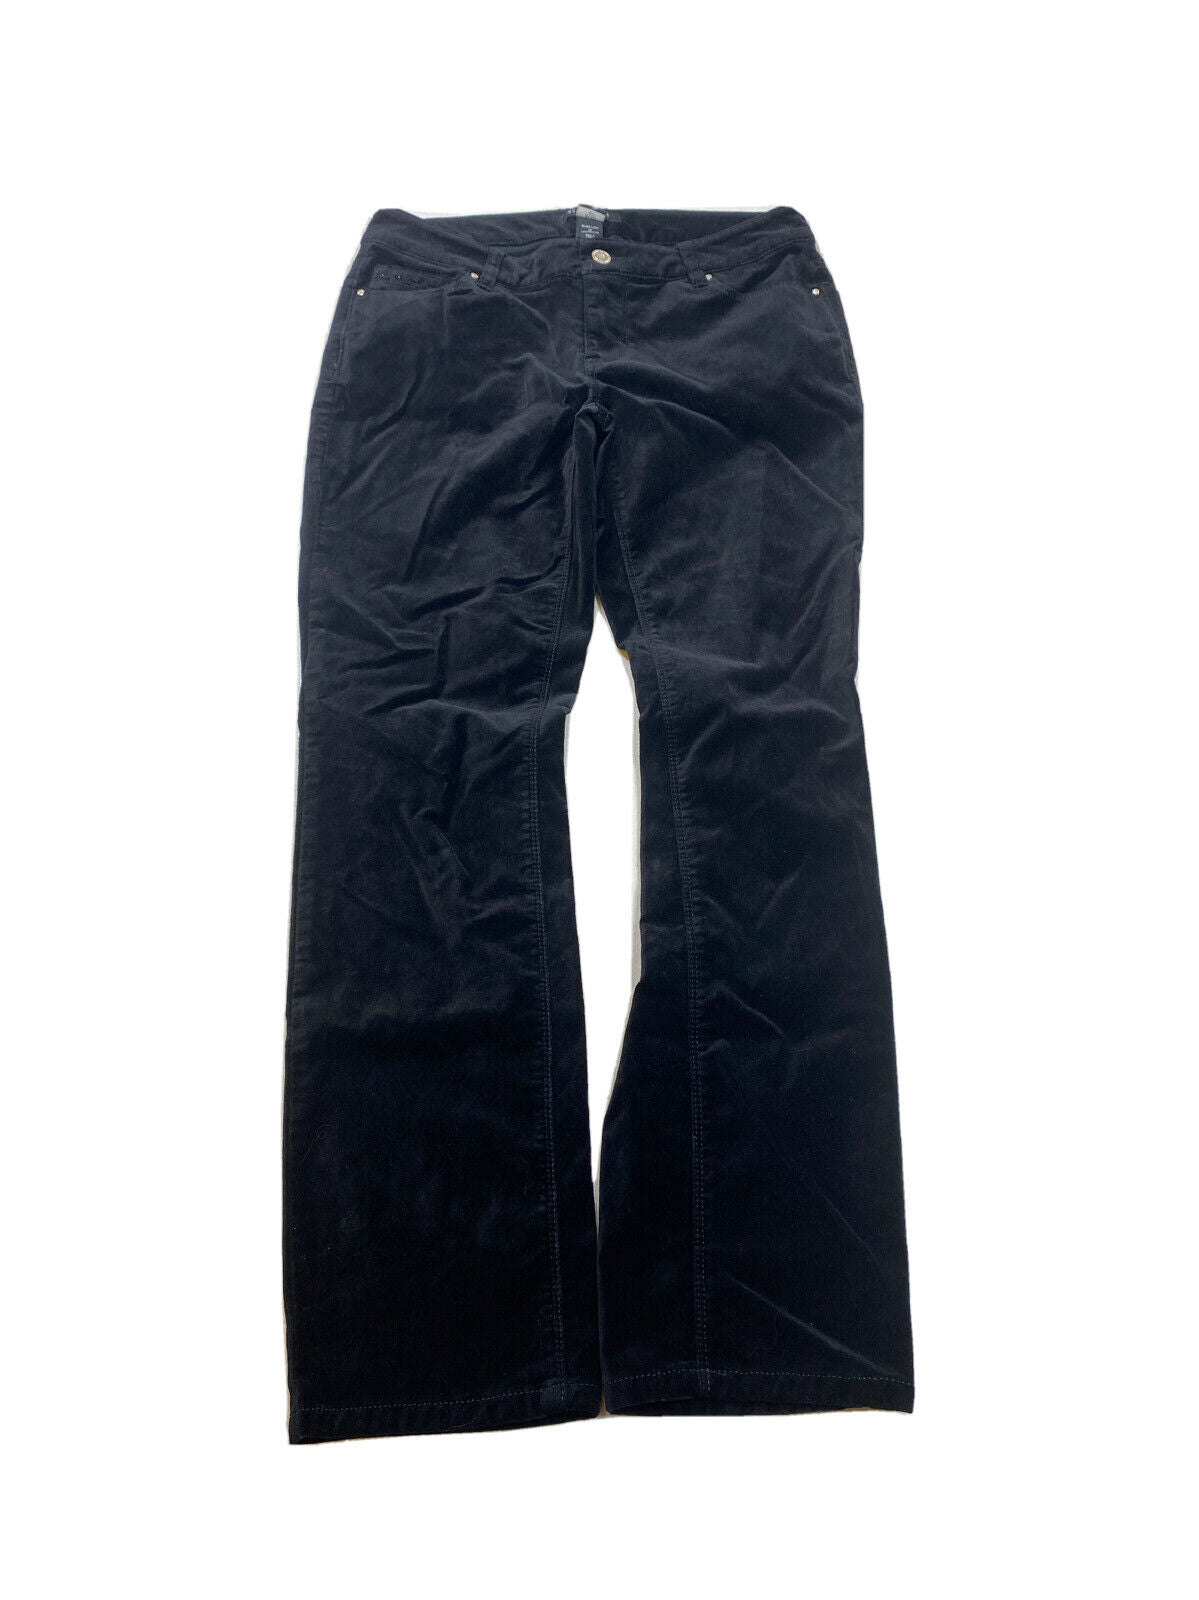 White House Black Market Women's Black Cropped Skimmer Pants - 4 R